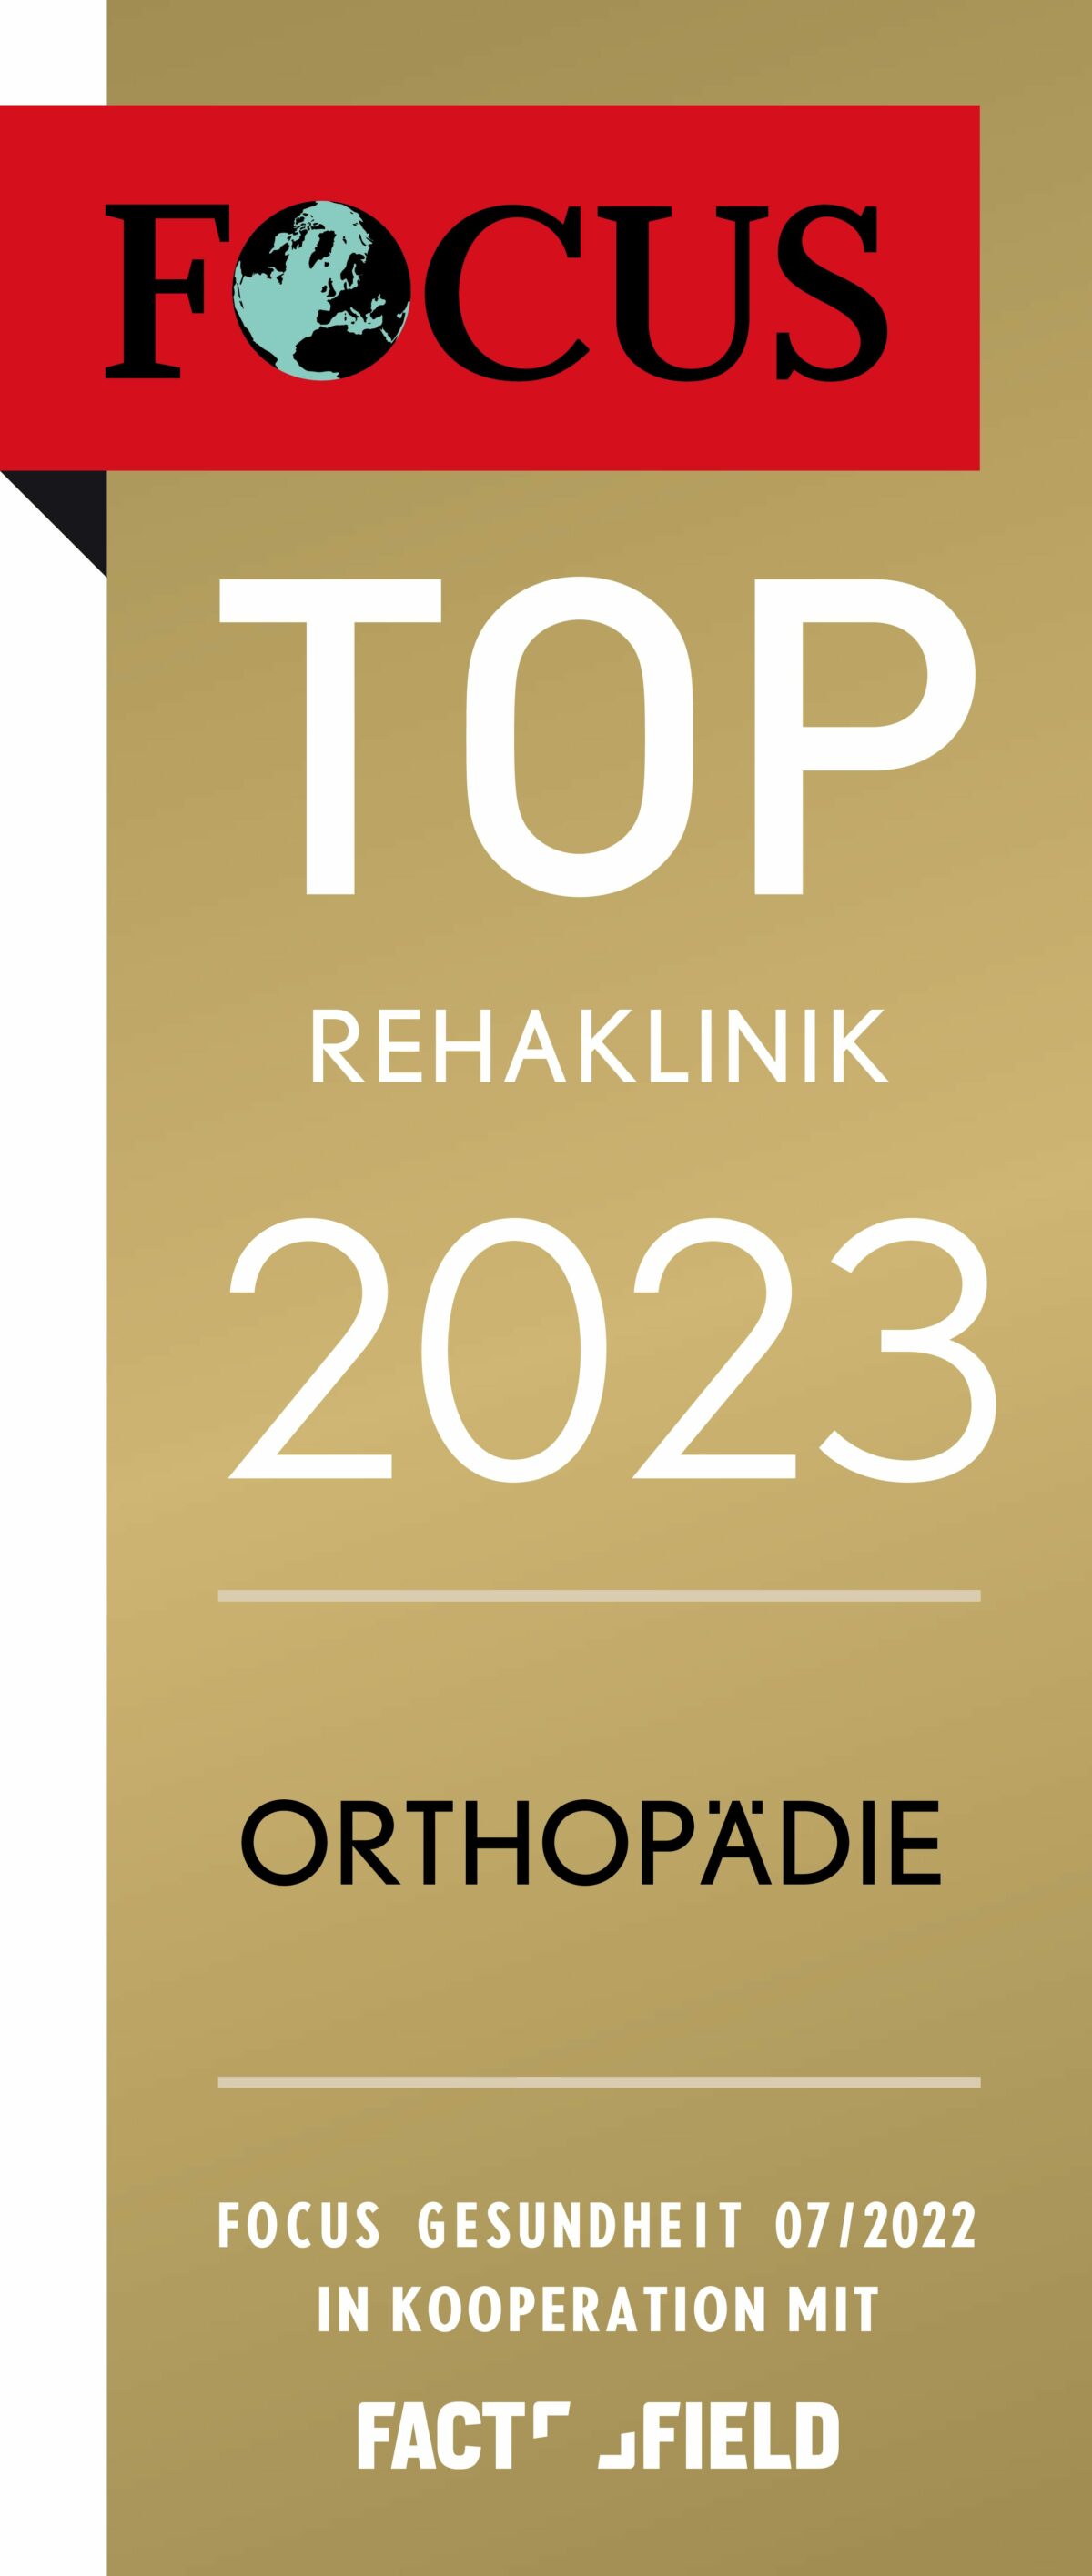 FCG_TOP_Rehaklinik_2023_Orthopaedie-pdf-1200x2832.jpg